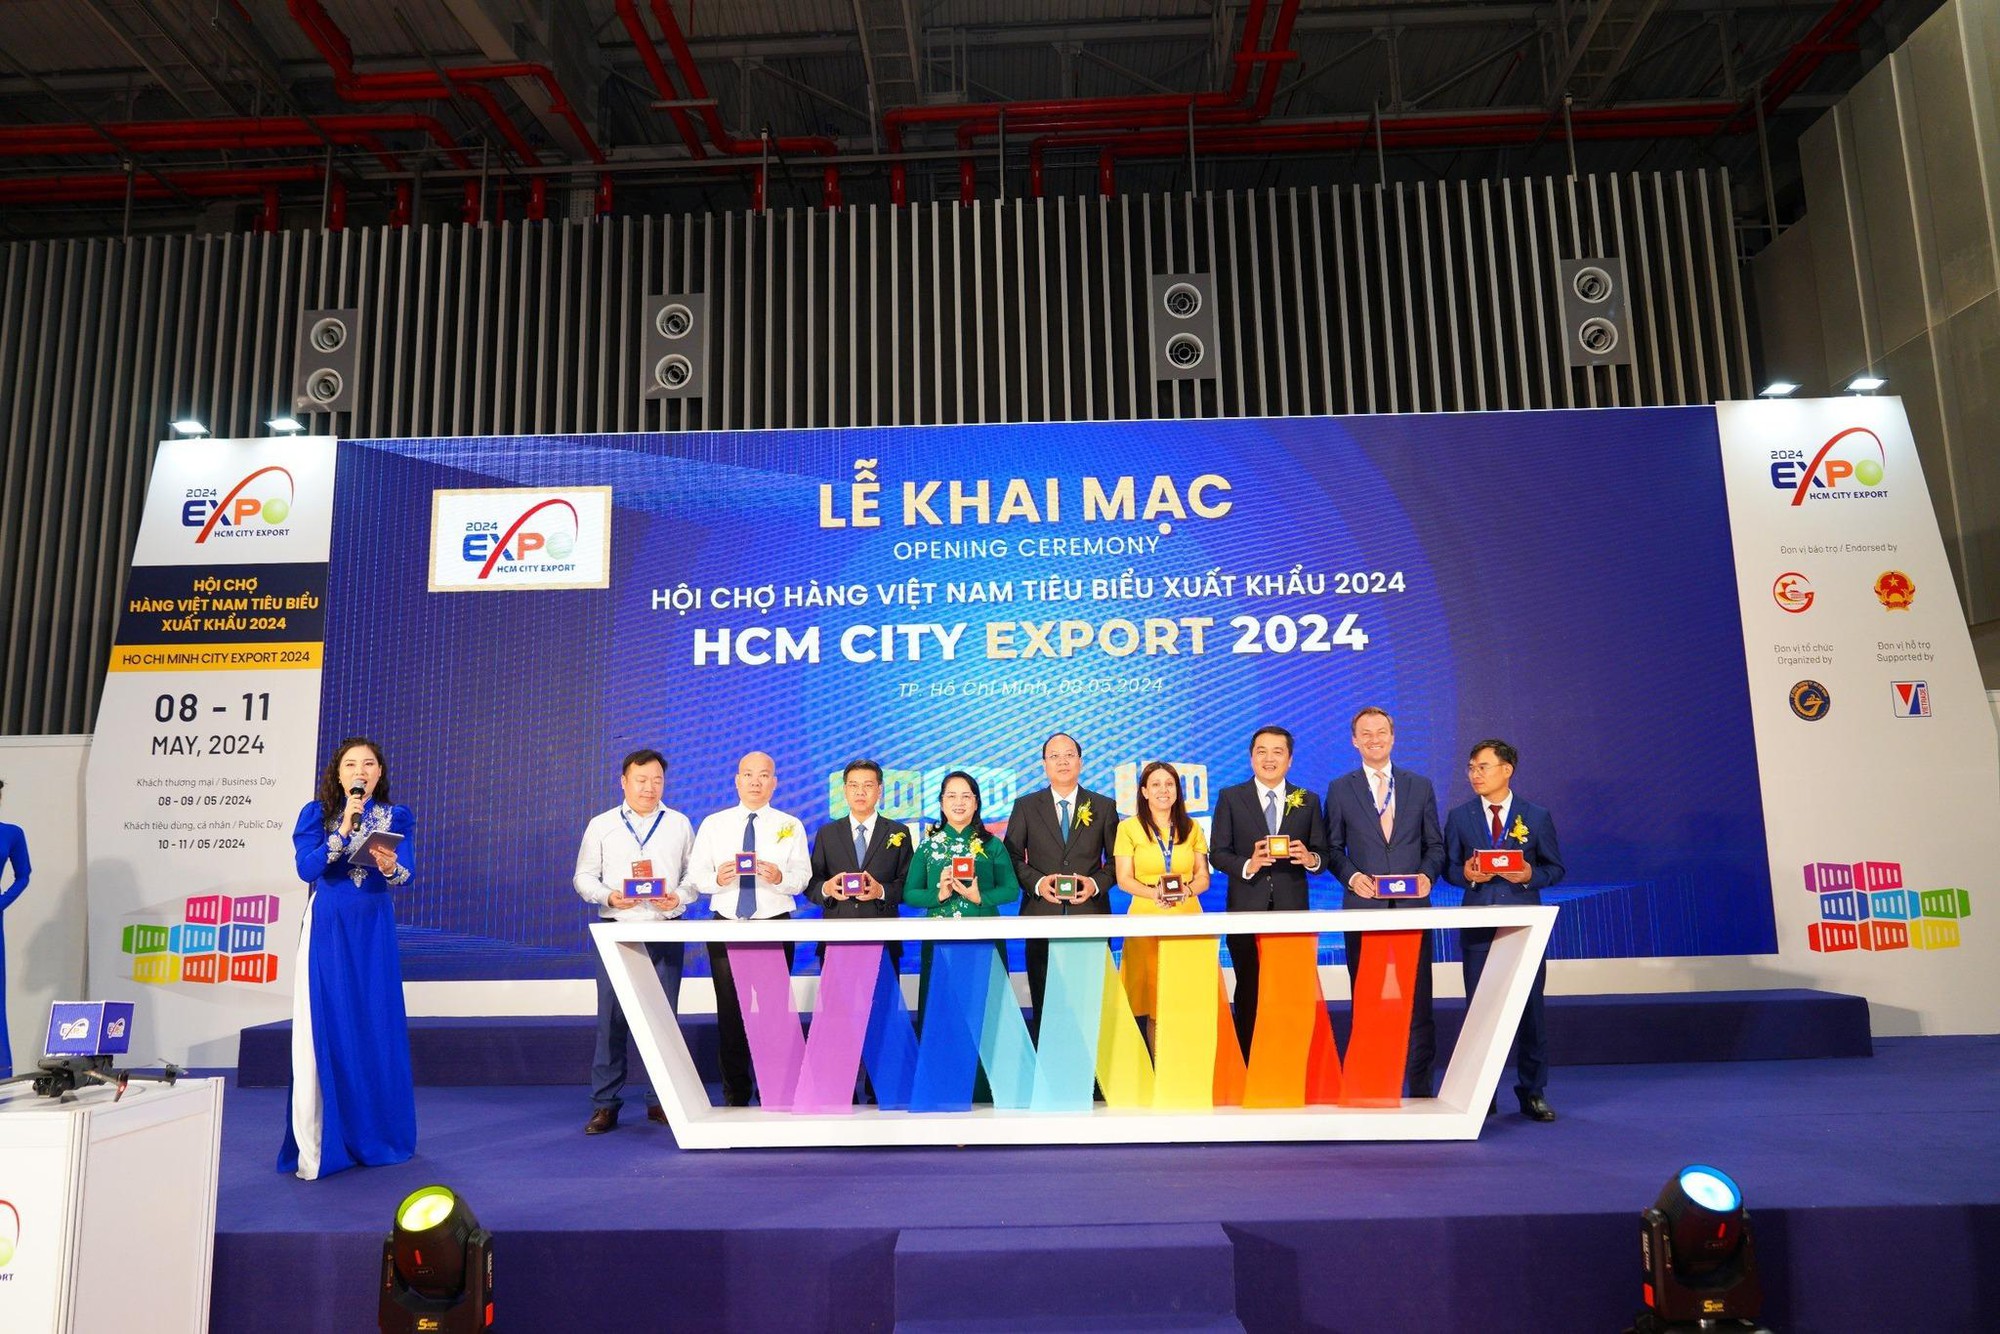 HCMC Export trở lại, cơ hội bứt phá cho doanh nghiệp xuất khẩu- Ảnh 1.